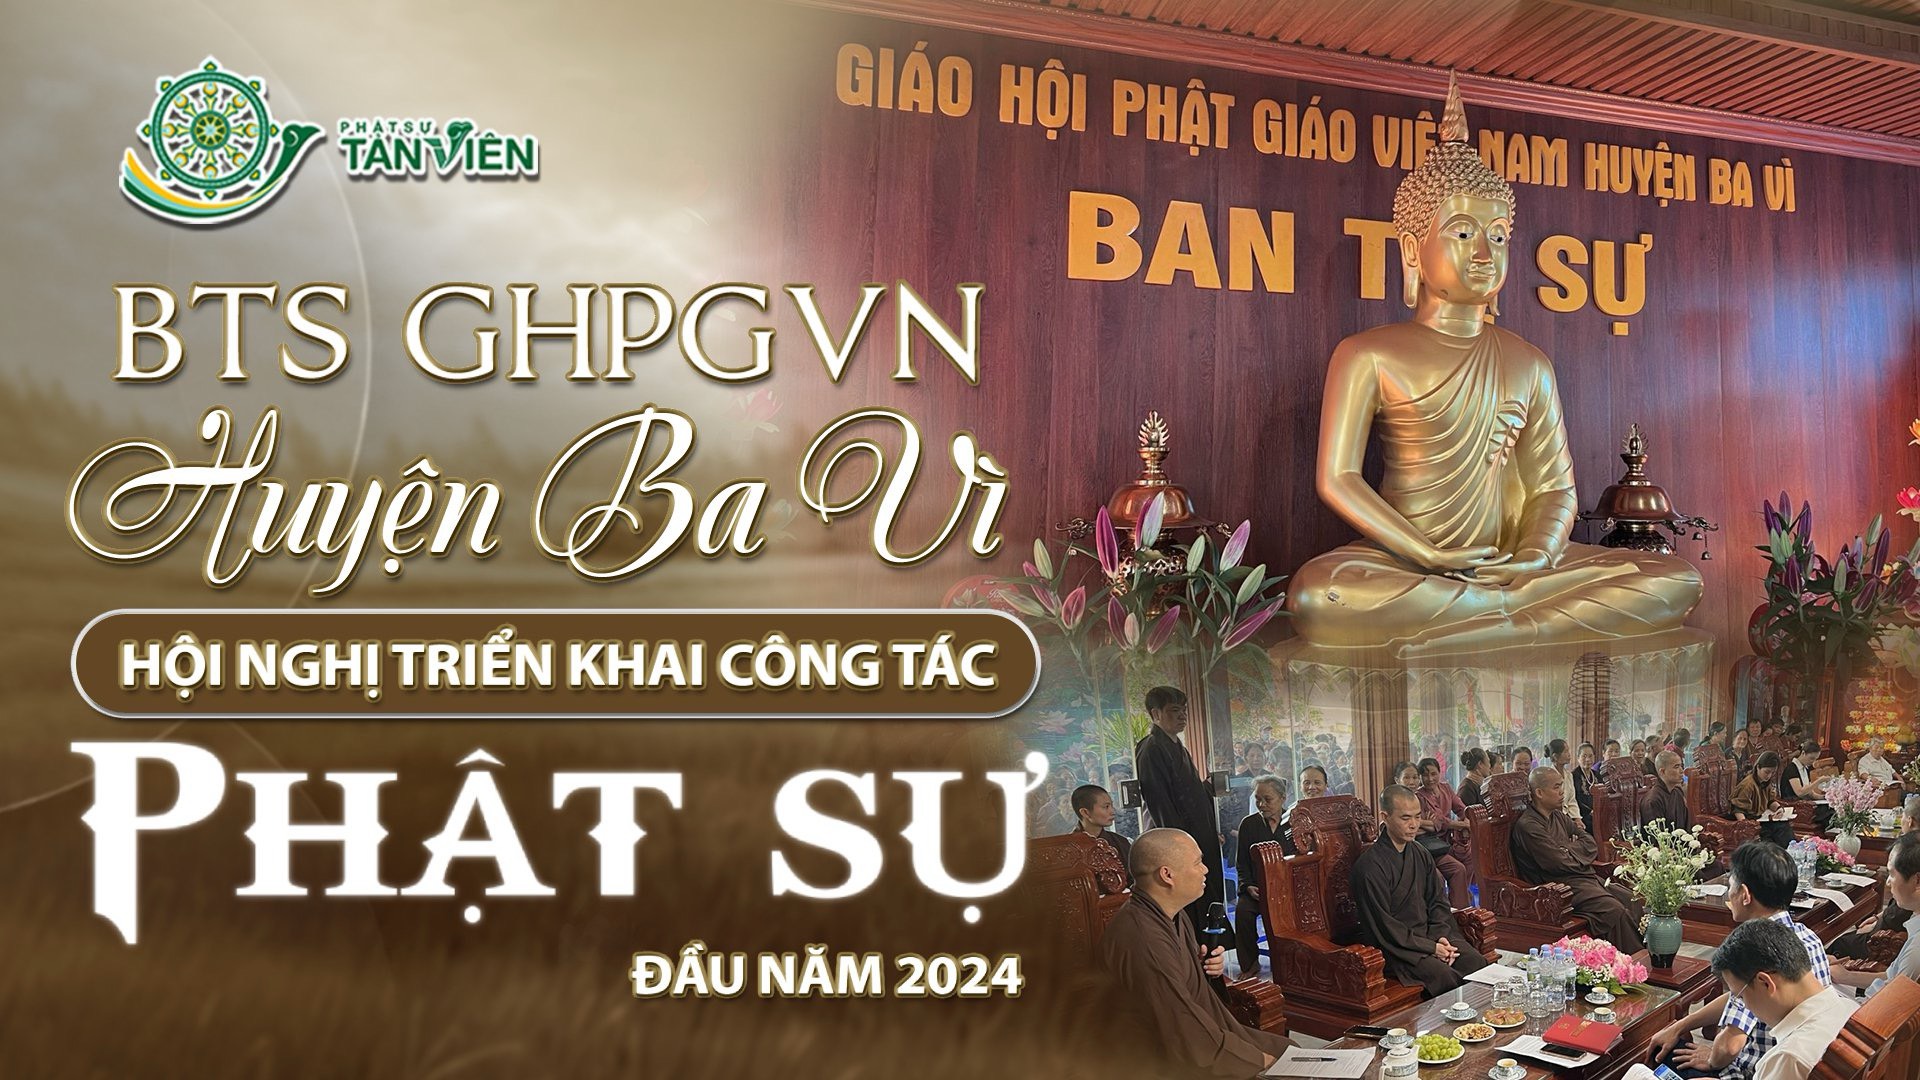 Hội nghị triển khai công tác Phật sự GHPGVN Huyện Ba Vì